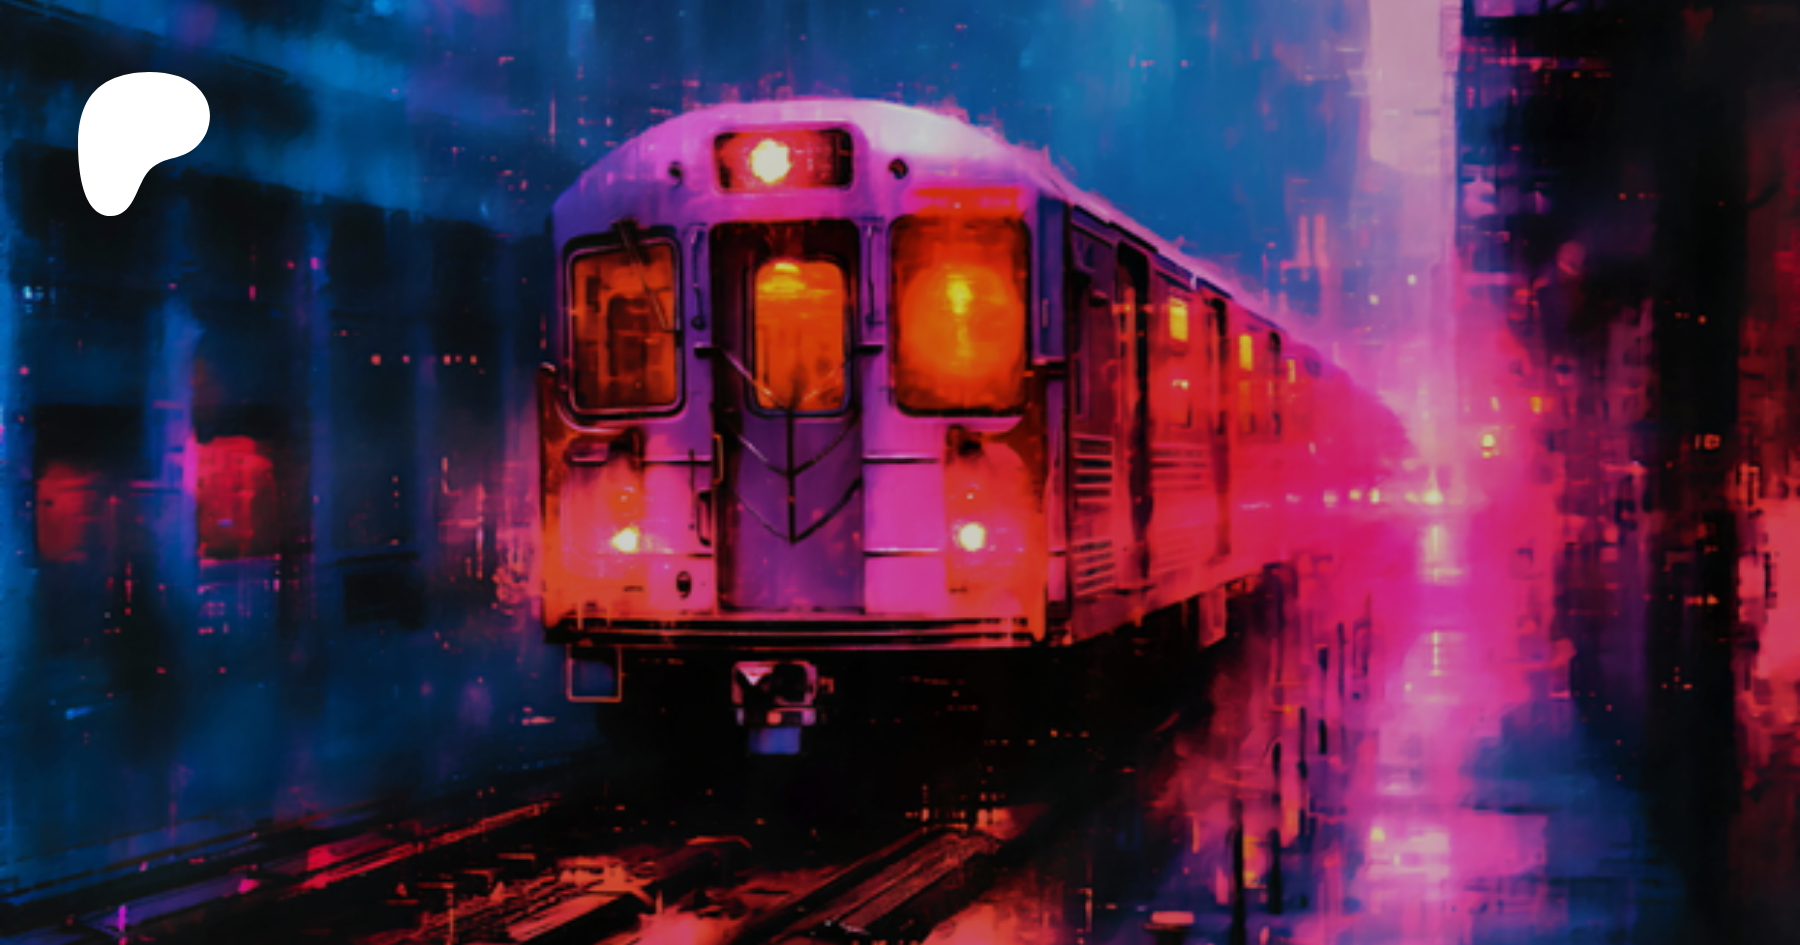 Imagini: Tren in stilul abstract albastru metalic (hi-res)